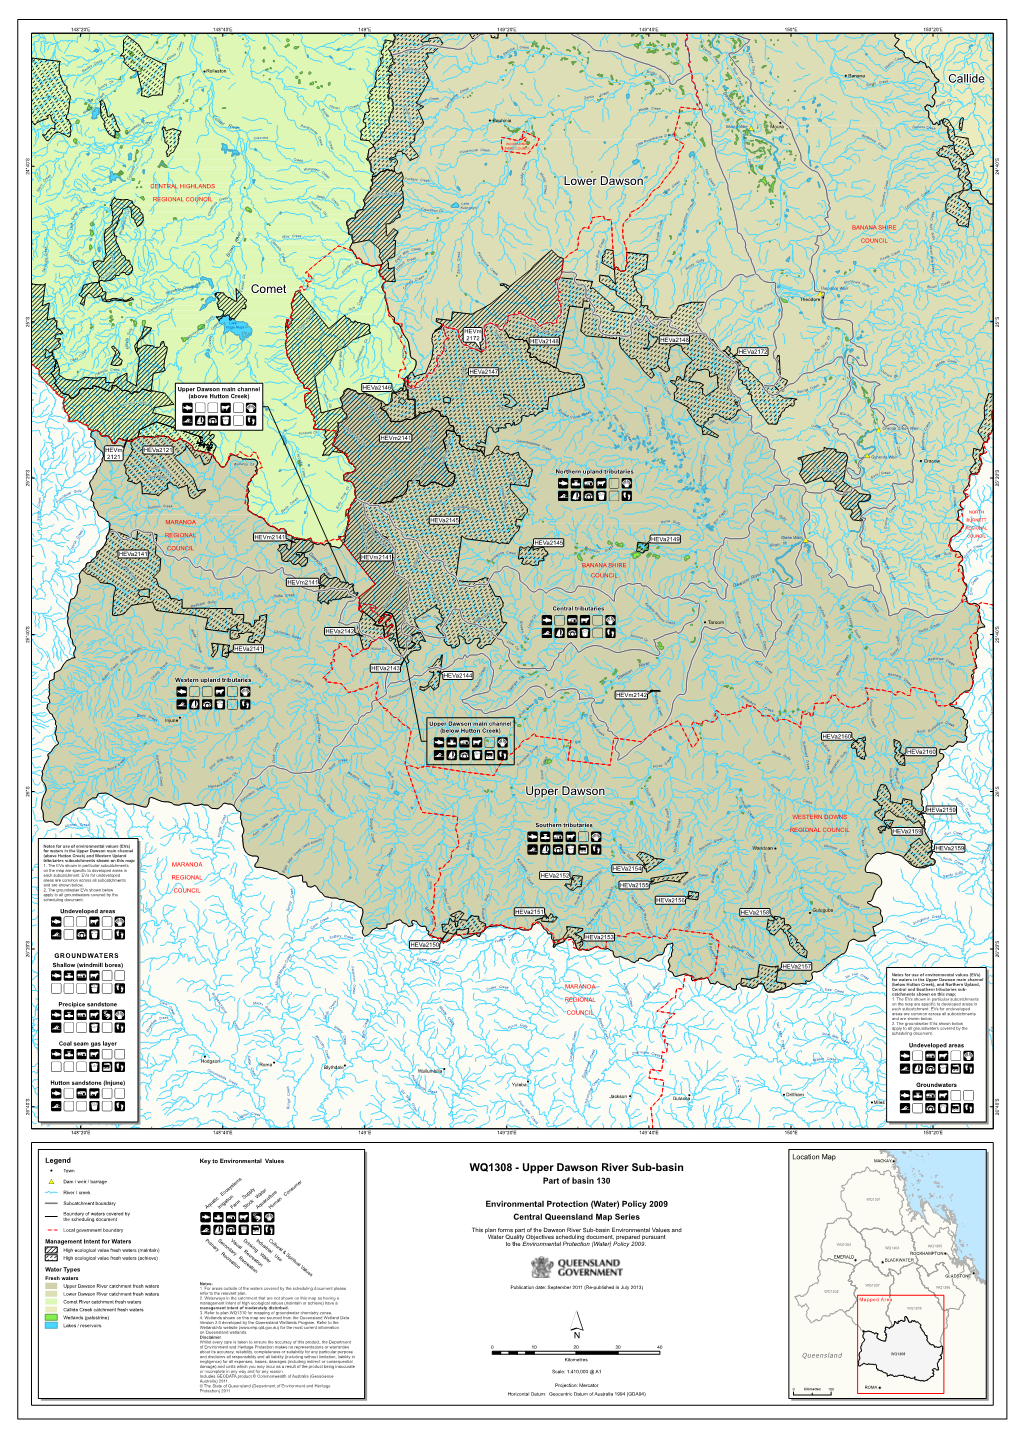 WQ1308 Upper Dawson River Sub-Basin